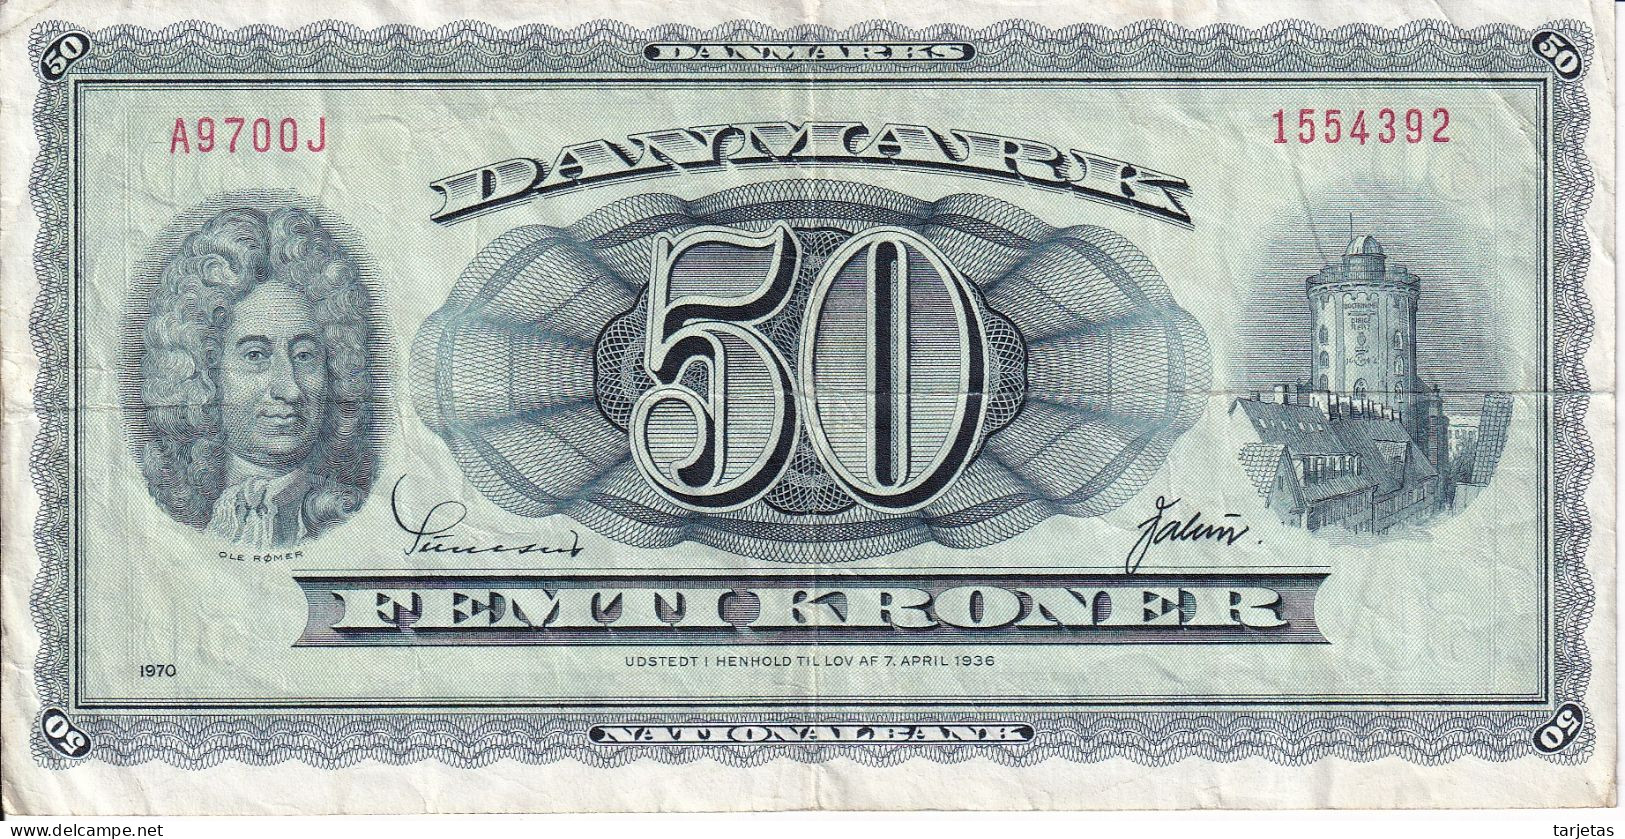 BILLETE DE DINAMARCA DE 50 KRONER DEL AÑO 1970 (BANKNOTE) RARO - Denemarken